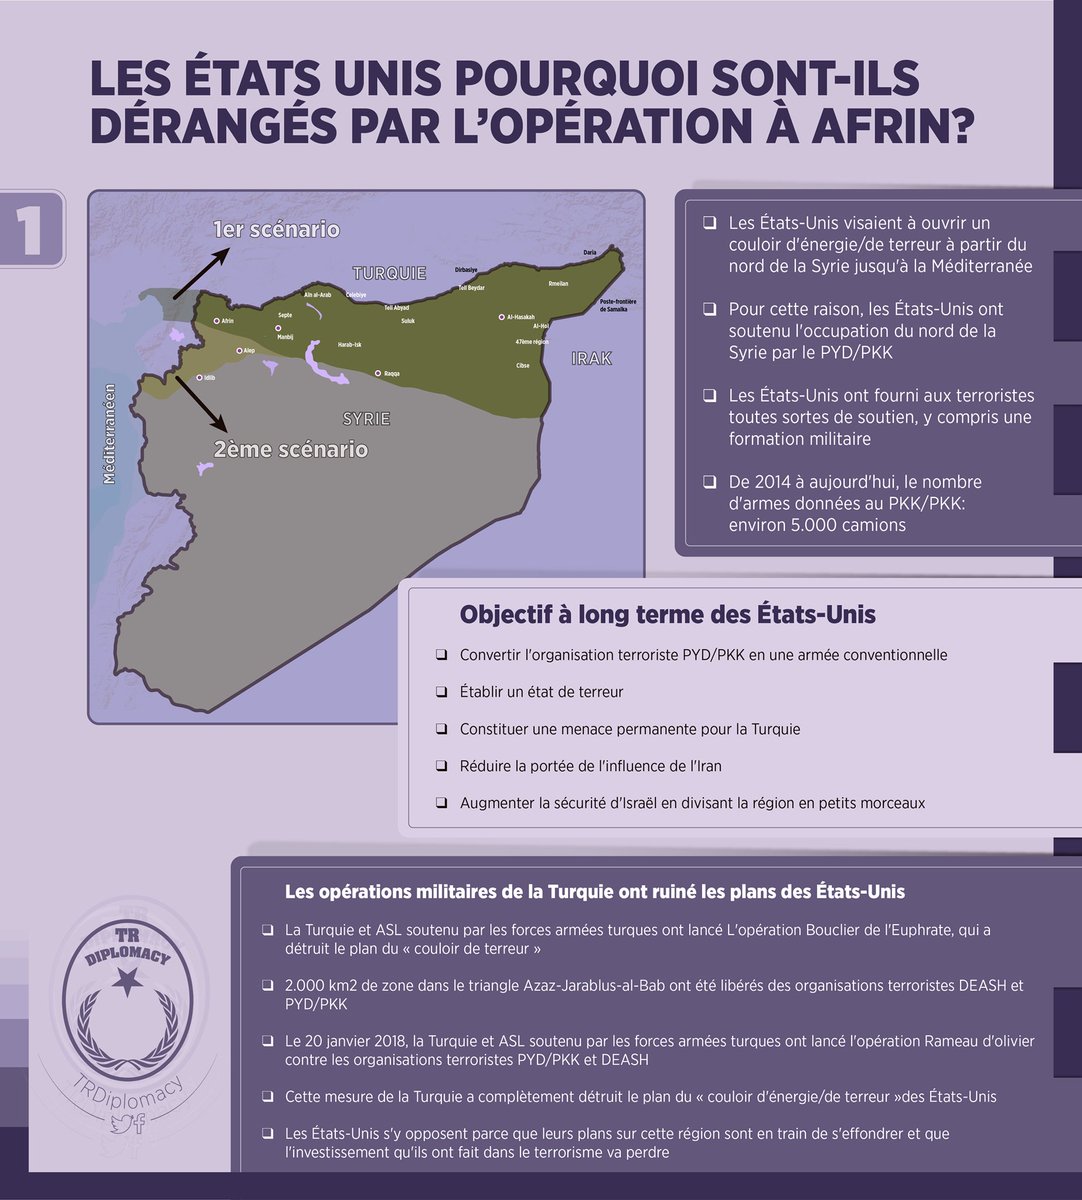 Les États-Unis, pourquoi sont-ils dérangés par Opération Afrin?